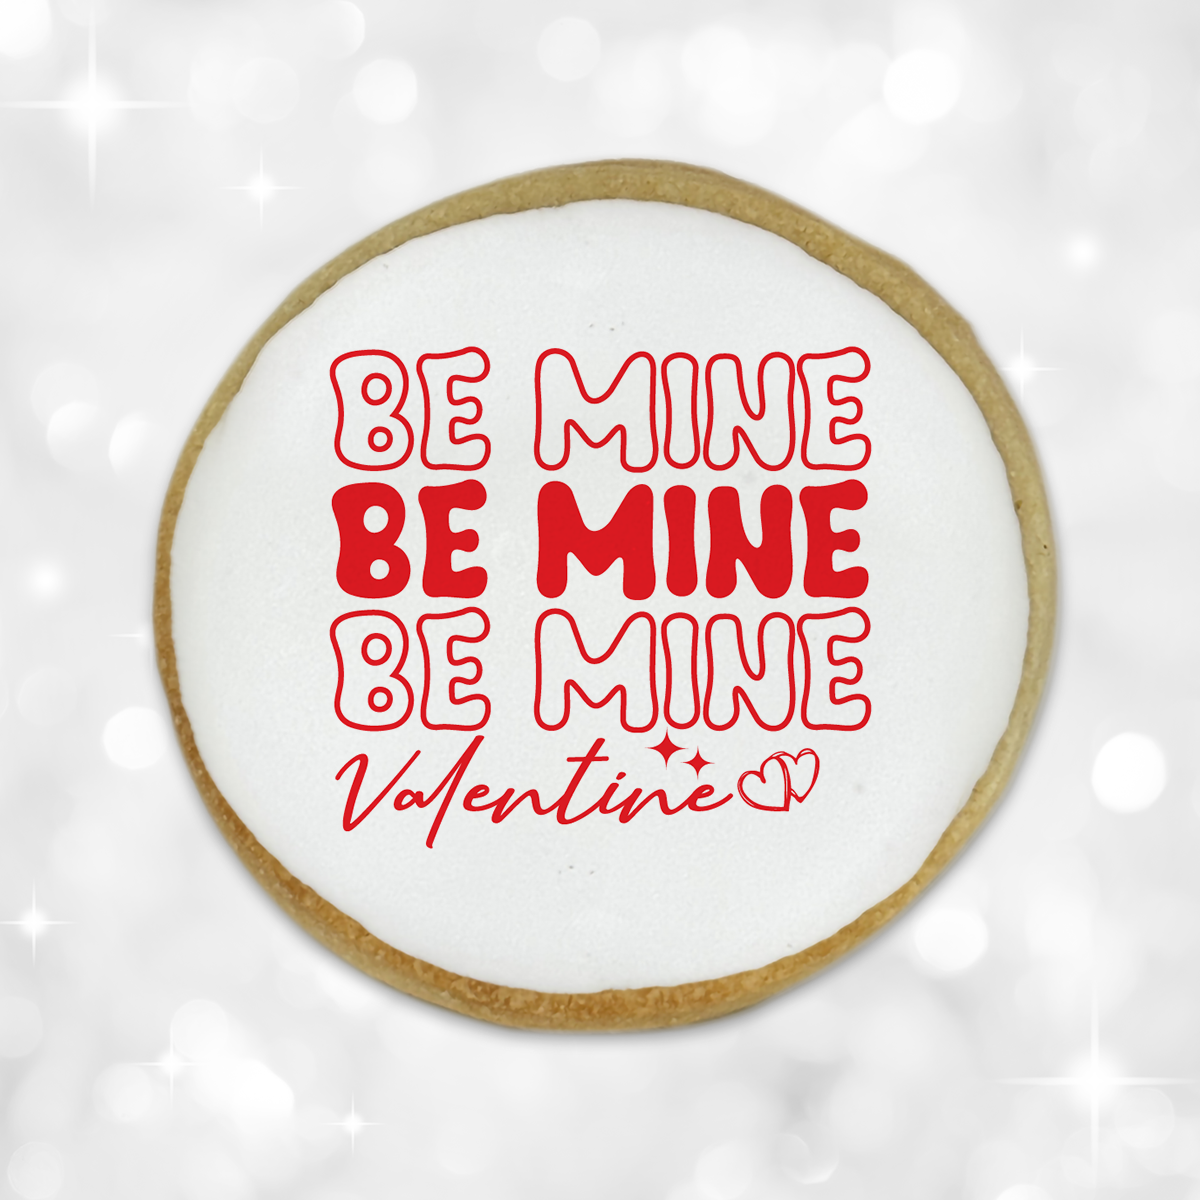 Valentine's Day "Be Mine Valentine" Round Cookies